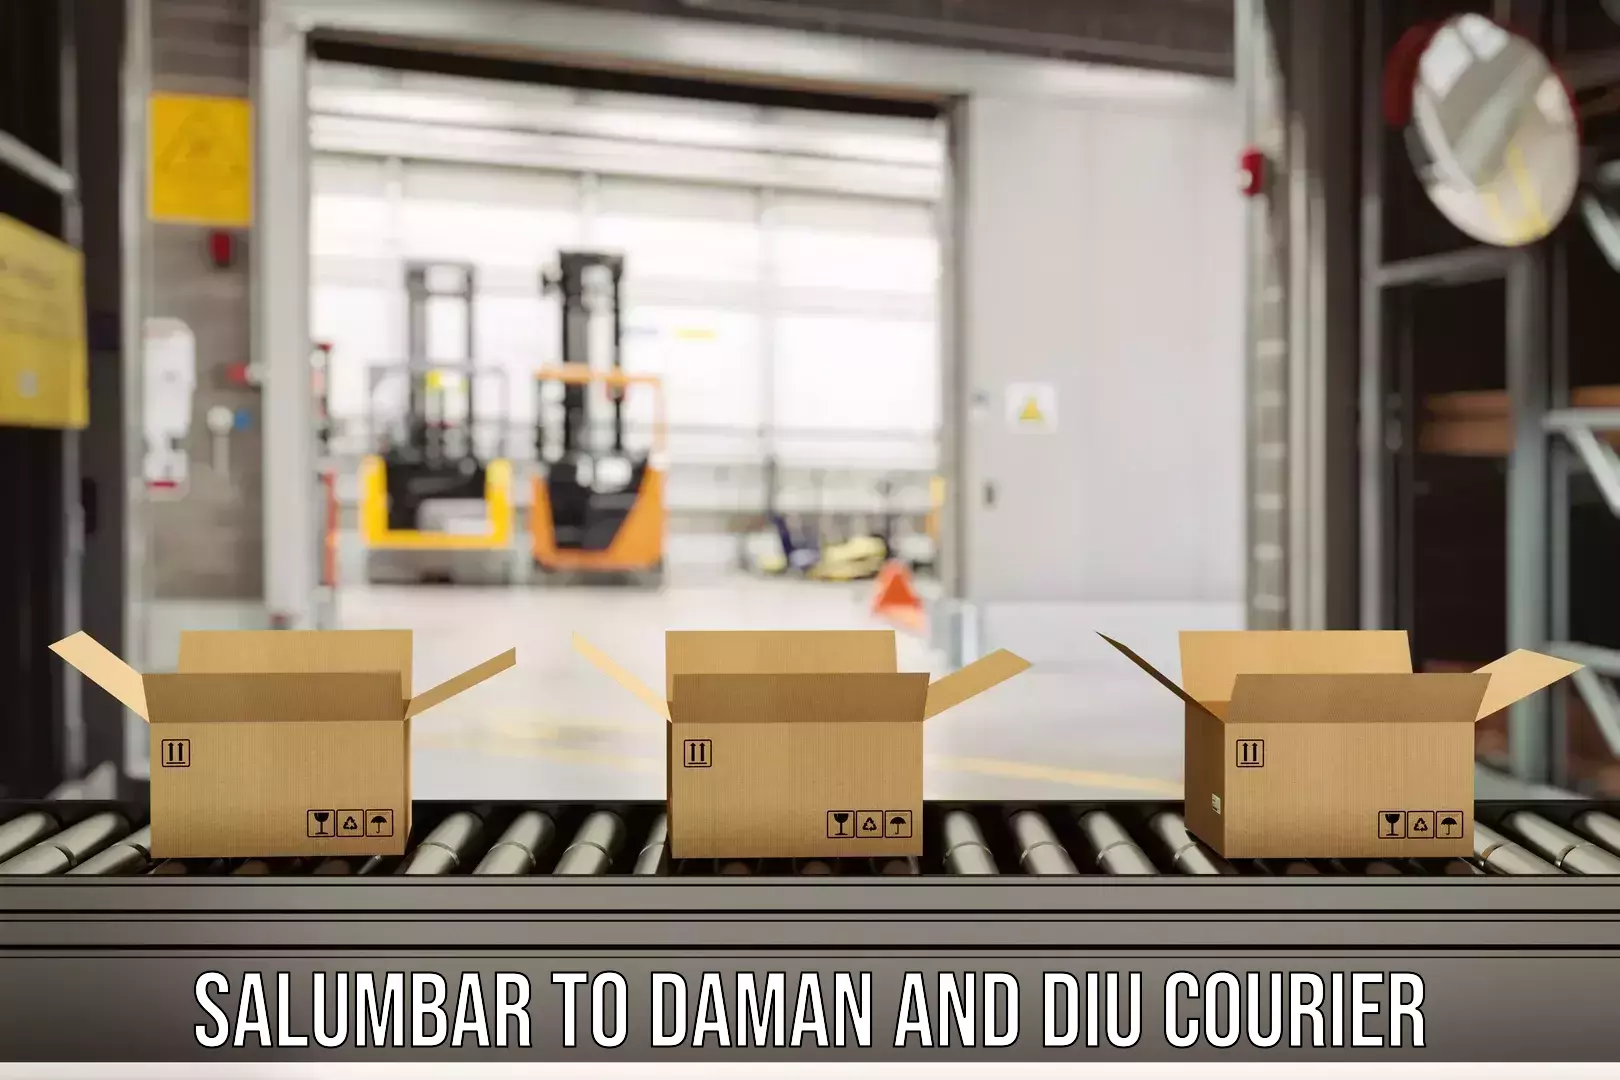 International courier networks Salumbar to Daman and Diu